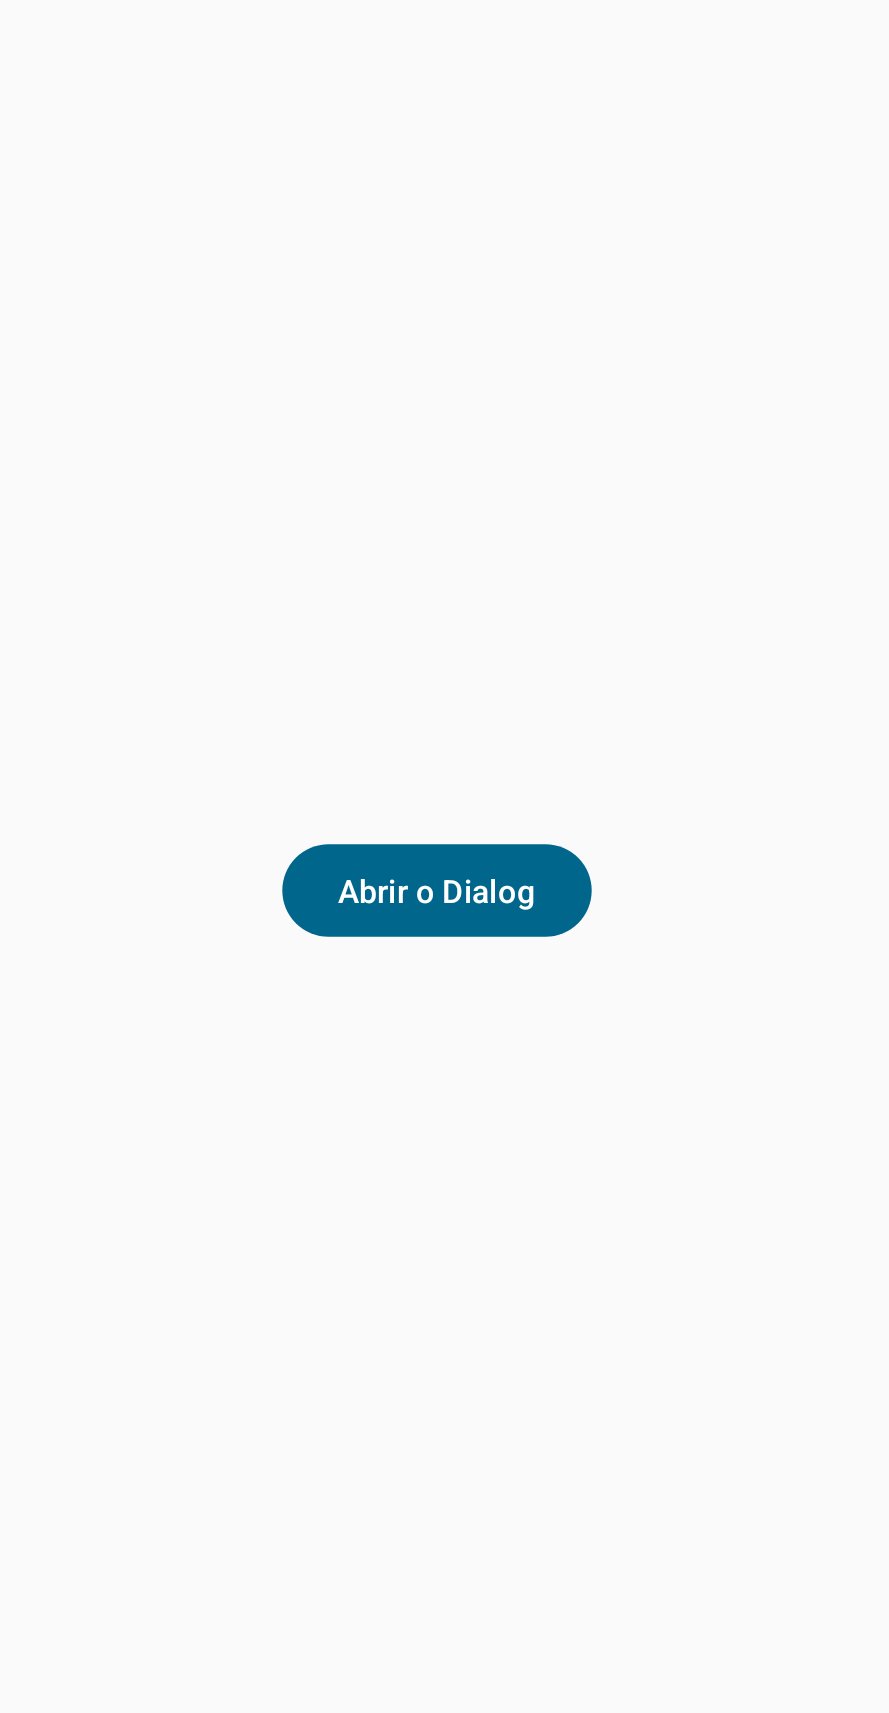 “Tela de um aplicativo, com fundo branco e um botão azul no meio da tela, com cantos arredondados com o texto: “abrir o dialog” dentro dele.”